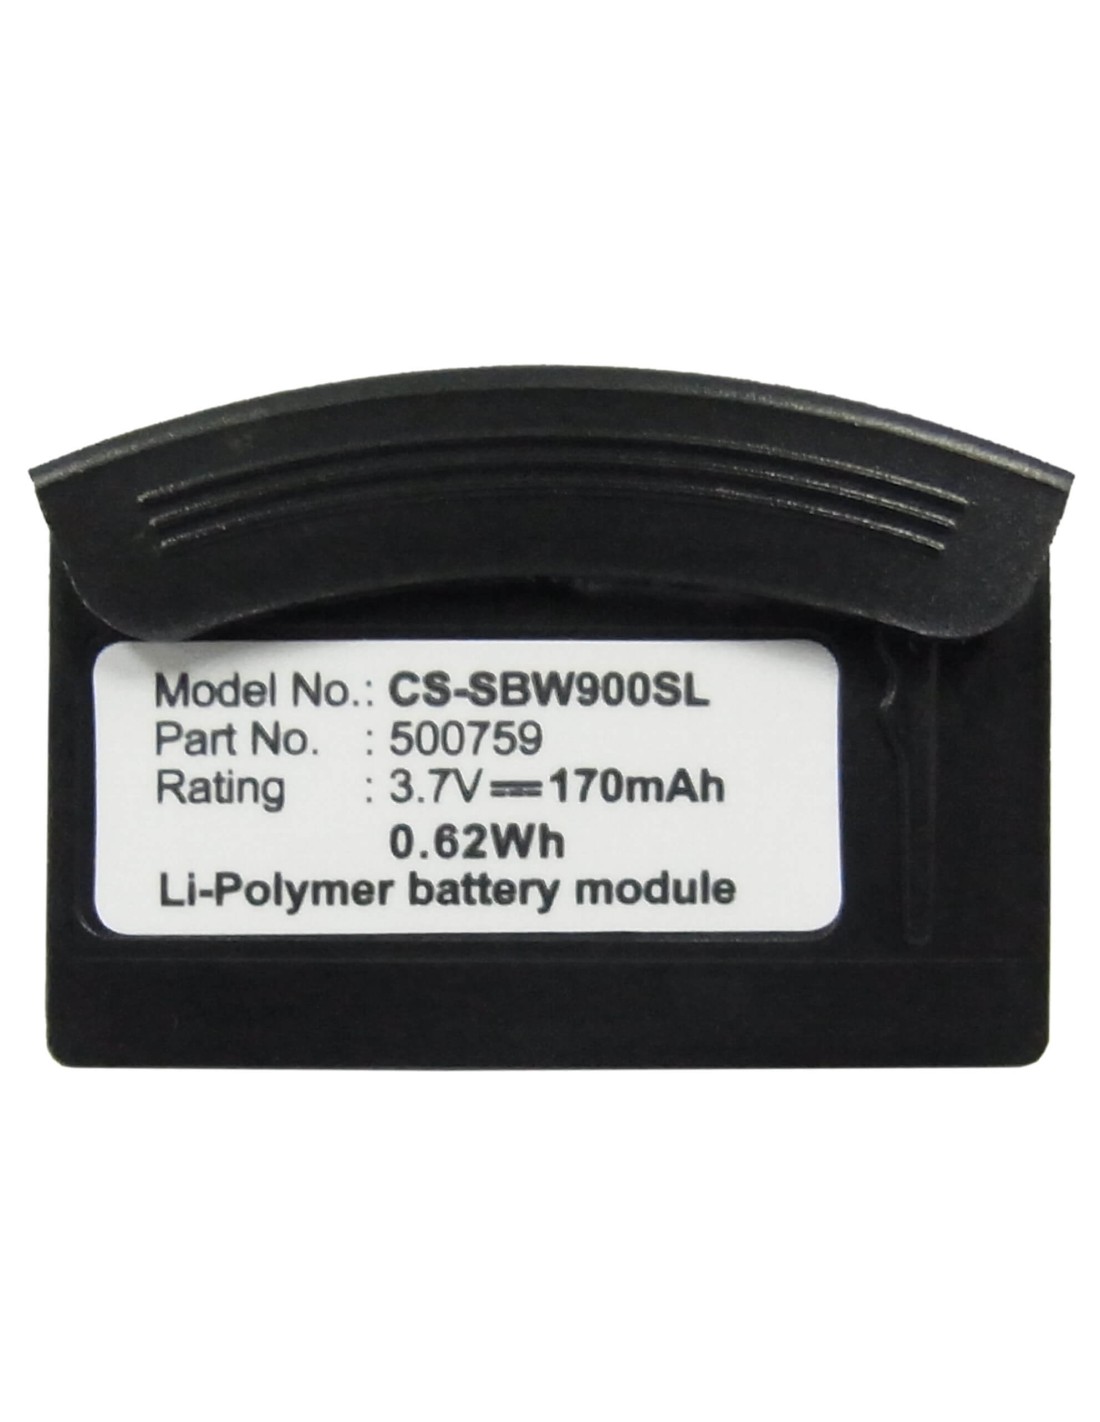 Battery for Sennheiser Bw900, Bw900bat 3.7V, 170mAh - 0.63Wh